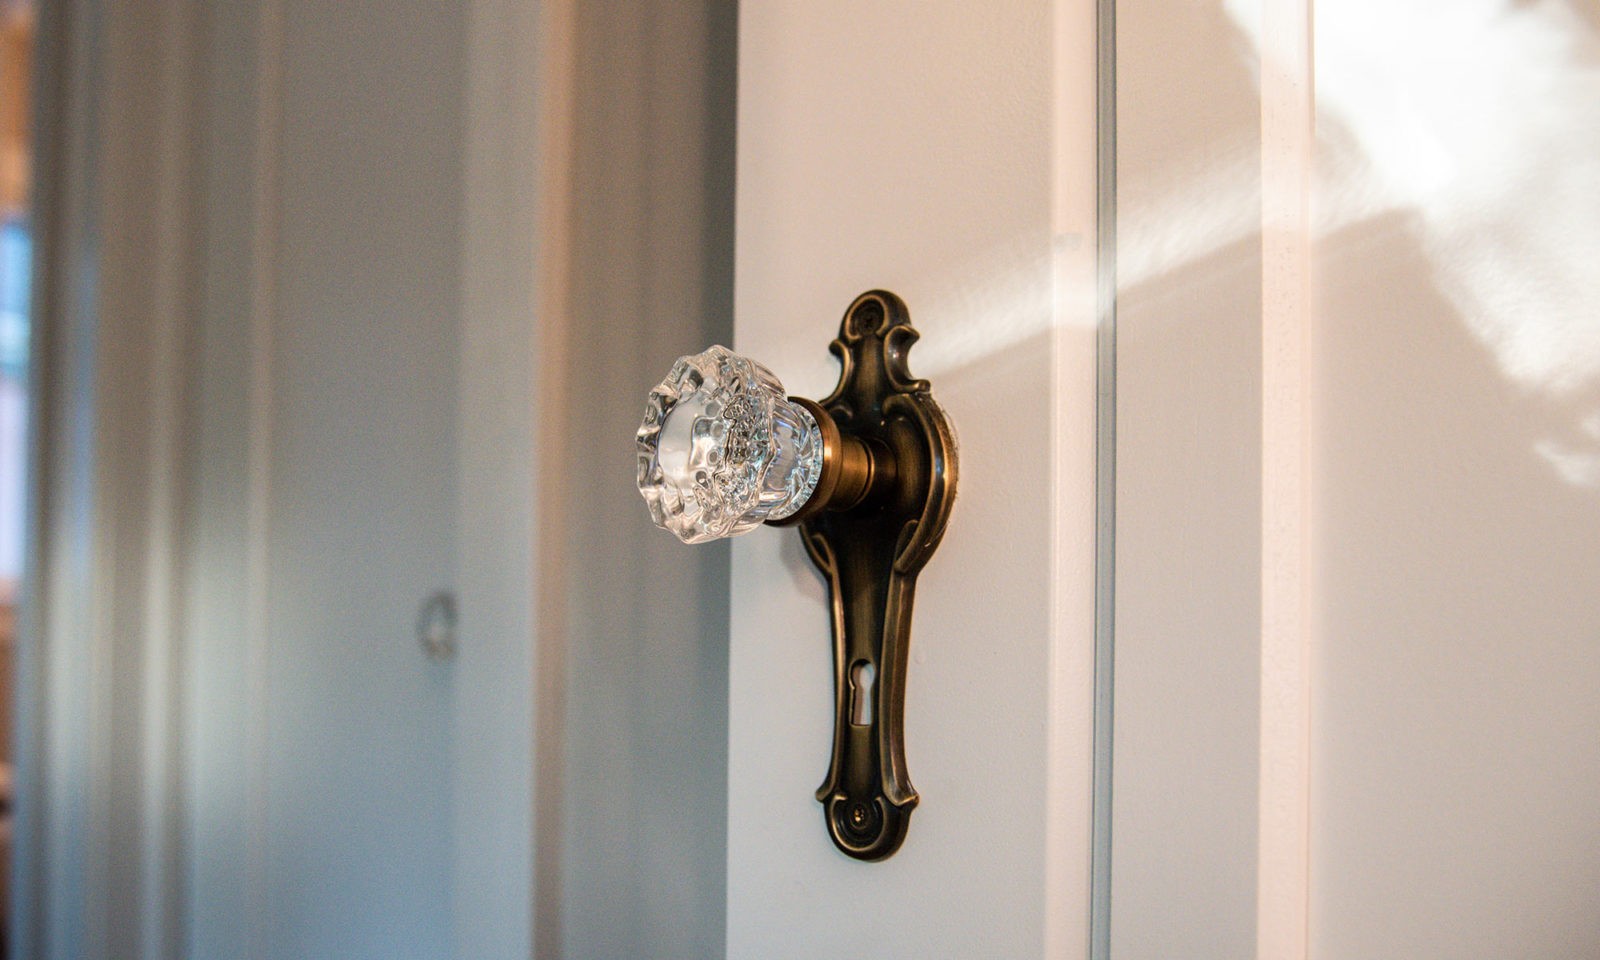 Glass door knob in intricate vintage-style gold door knob holder